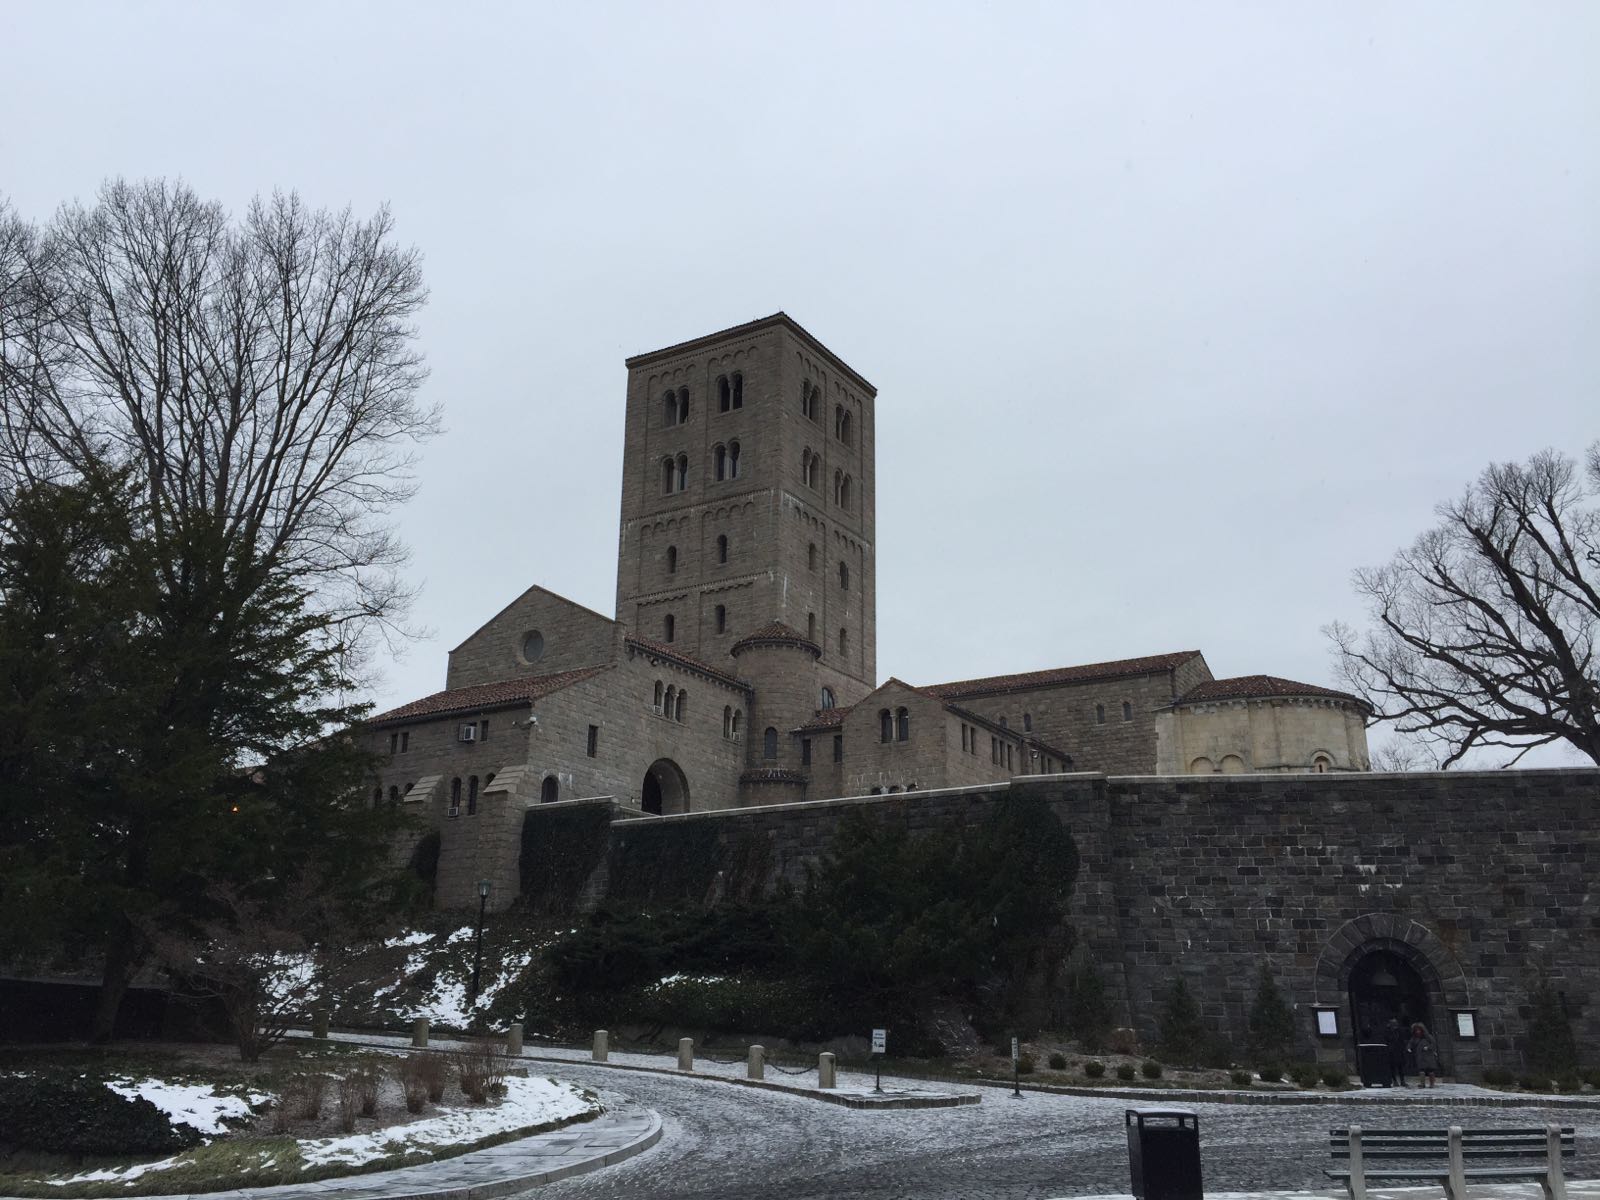 去的时候下雪了铺雪的修道院好像瞬间回到中世纪想象着静心修行的僧侣们一边